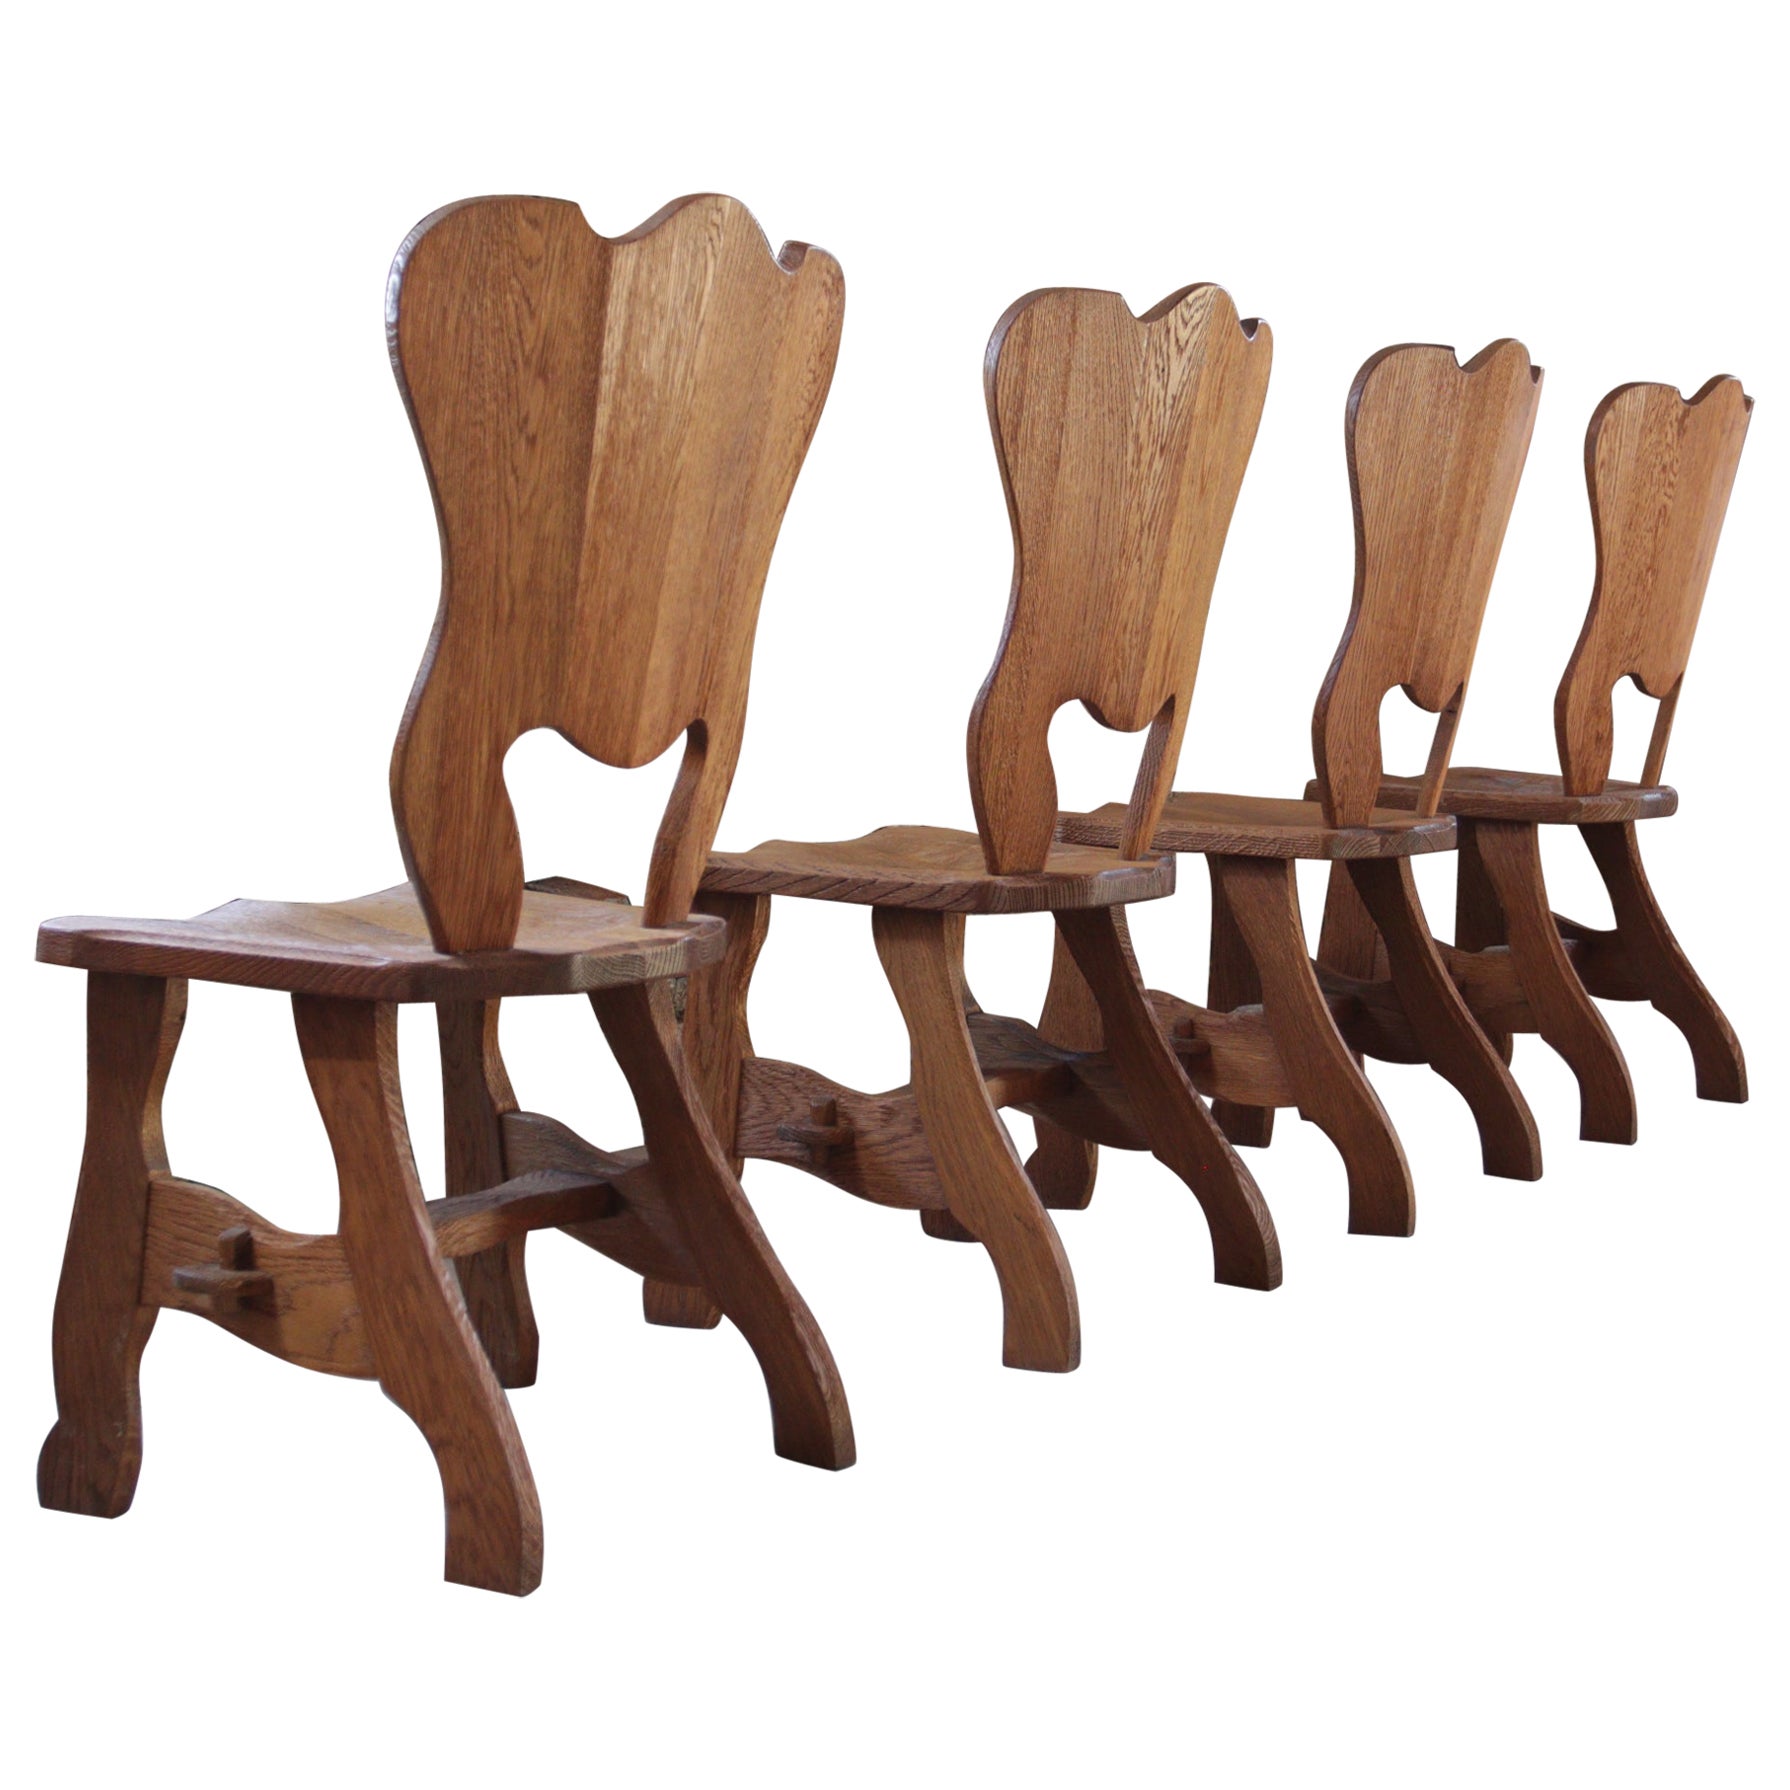 Axel Vervoordt Style Wabi-Sabi Dining Chairs, Atelier Marolles, 1960s ...